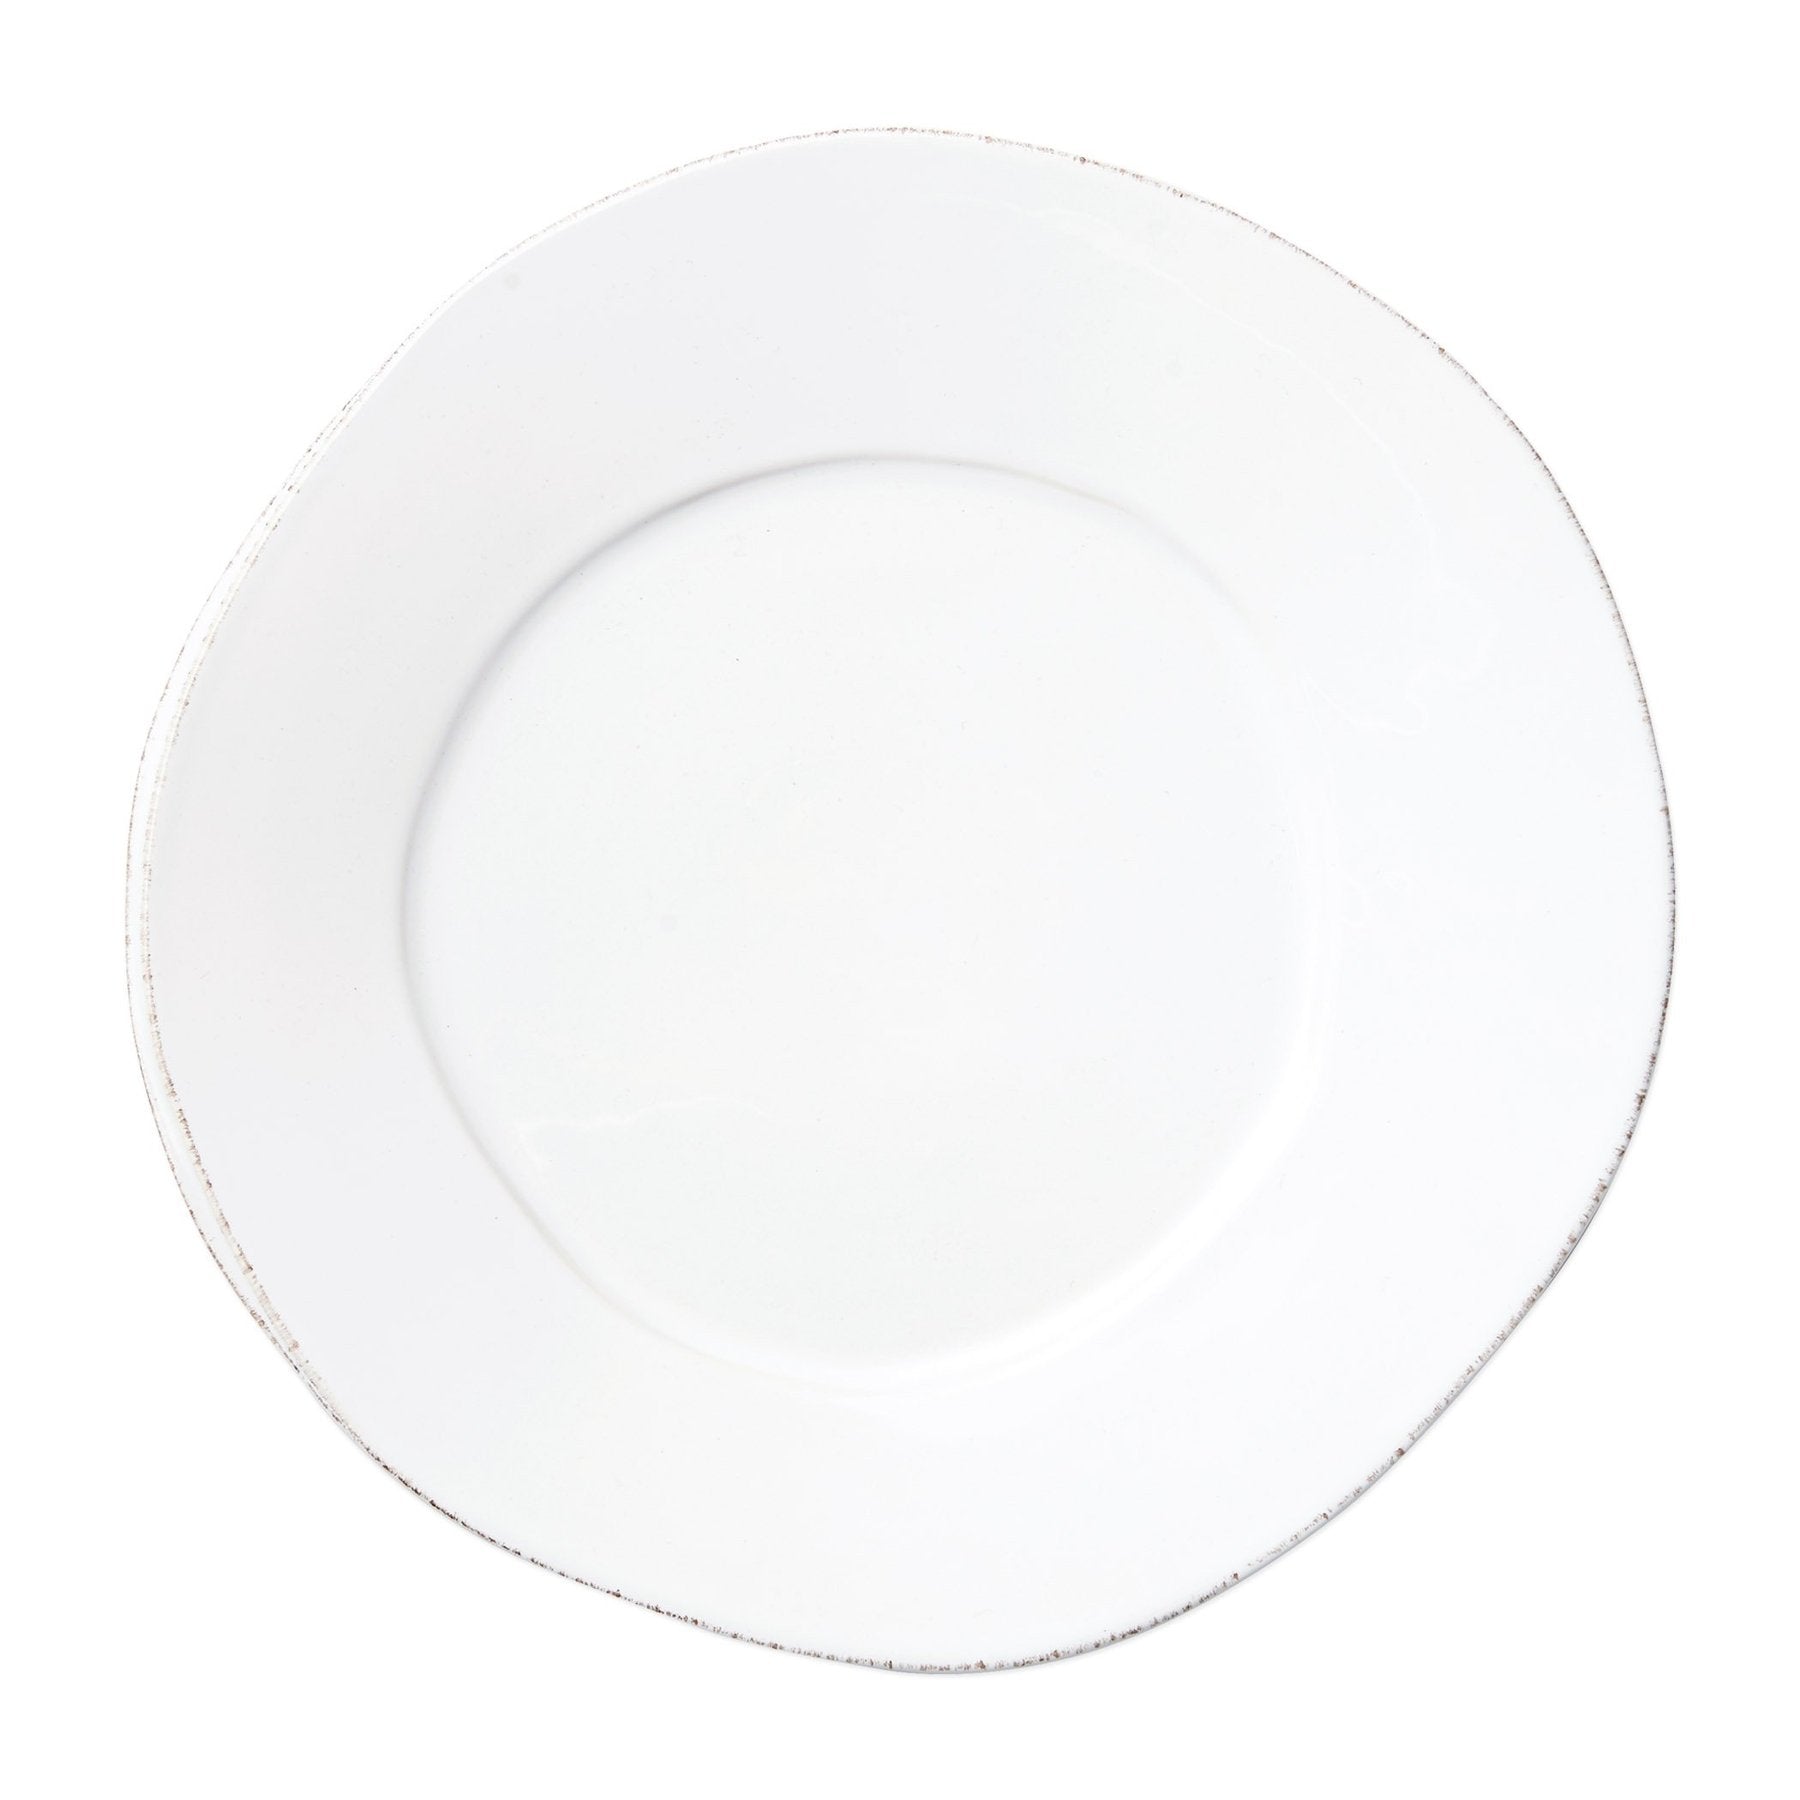 white dinner plate on white background.